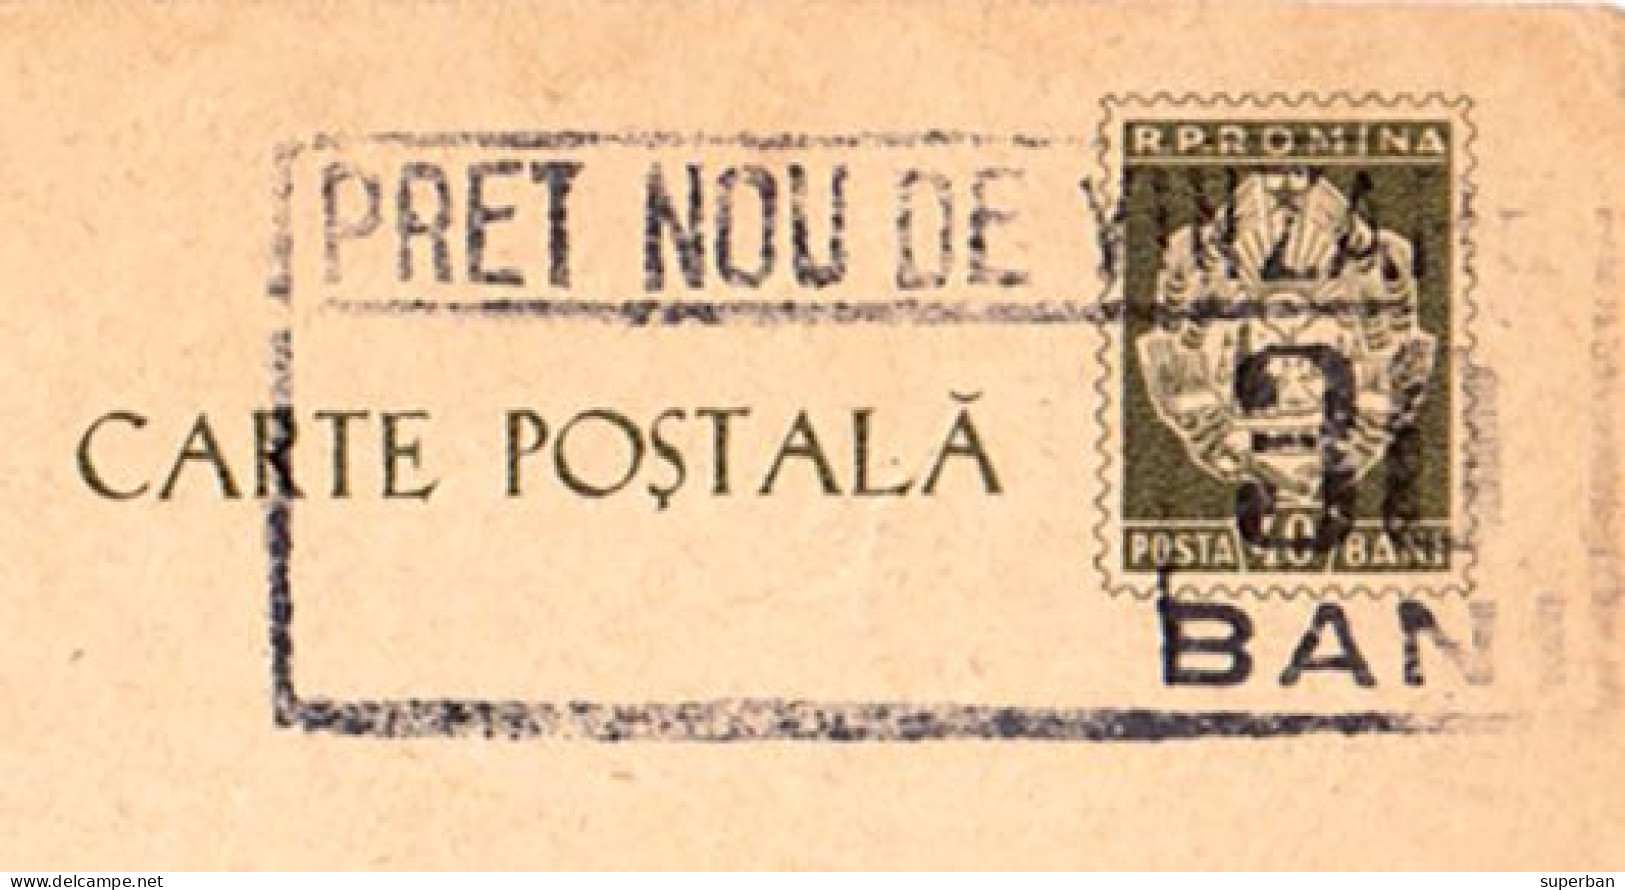 ROMANIA ~ 1961 - CARTE POSTALA Cu SUPRATIPAR : PRET NOU... : 30 BANI / 40 BANI - STATIONERY PICTURE POSTCARD (an671) - Enteros Postales